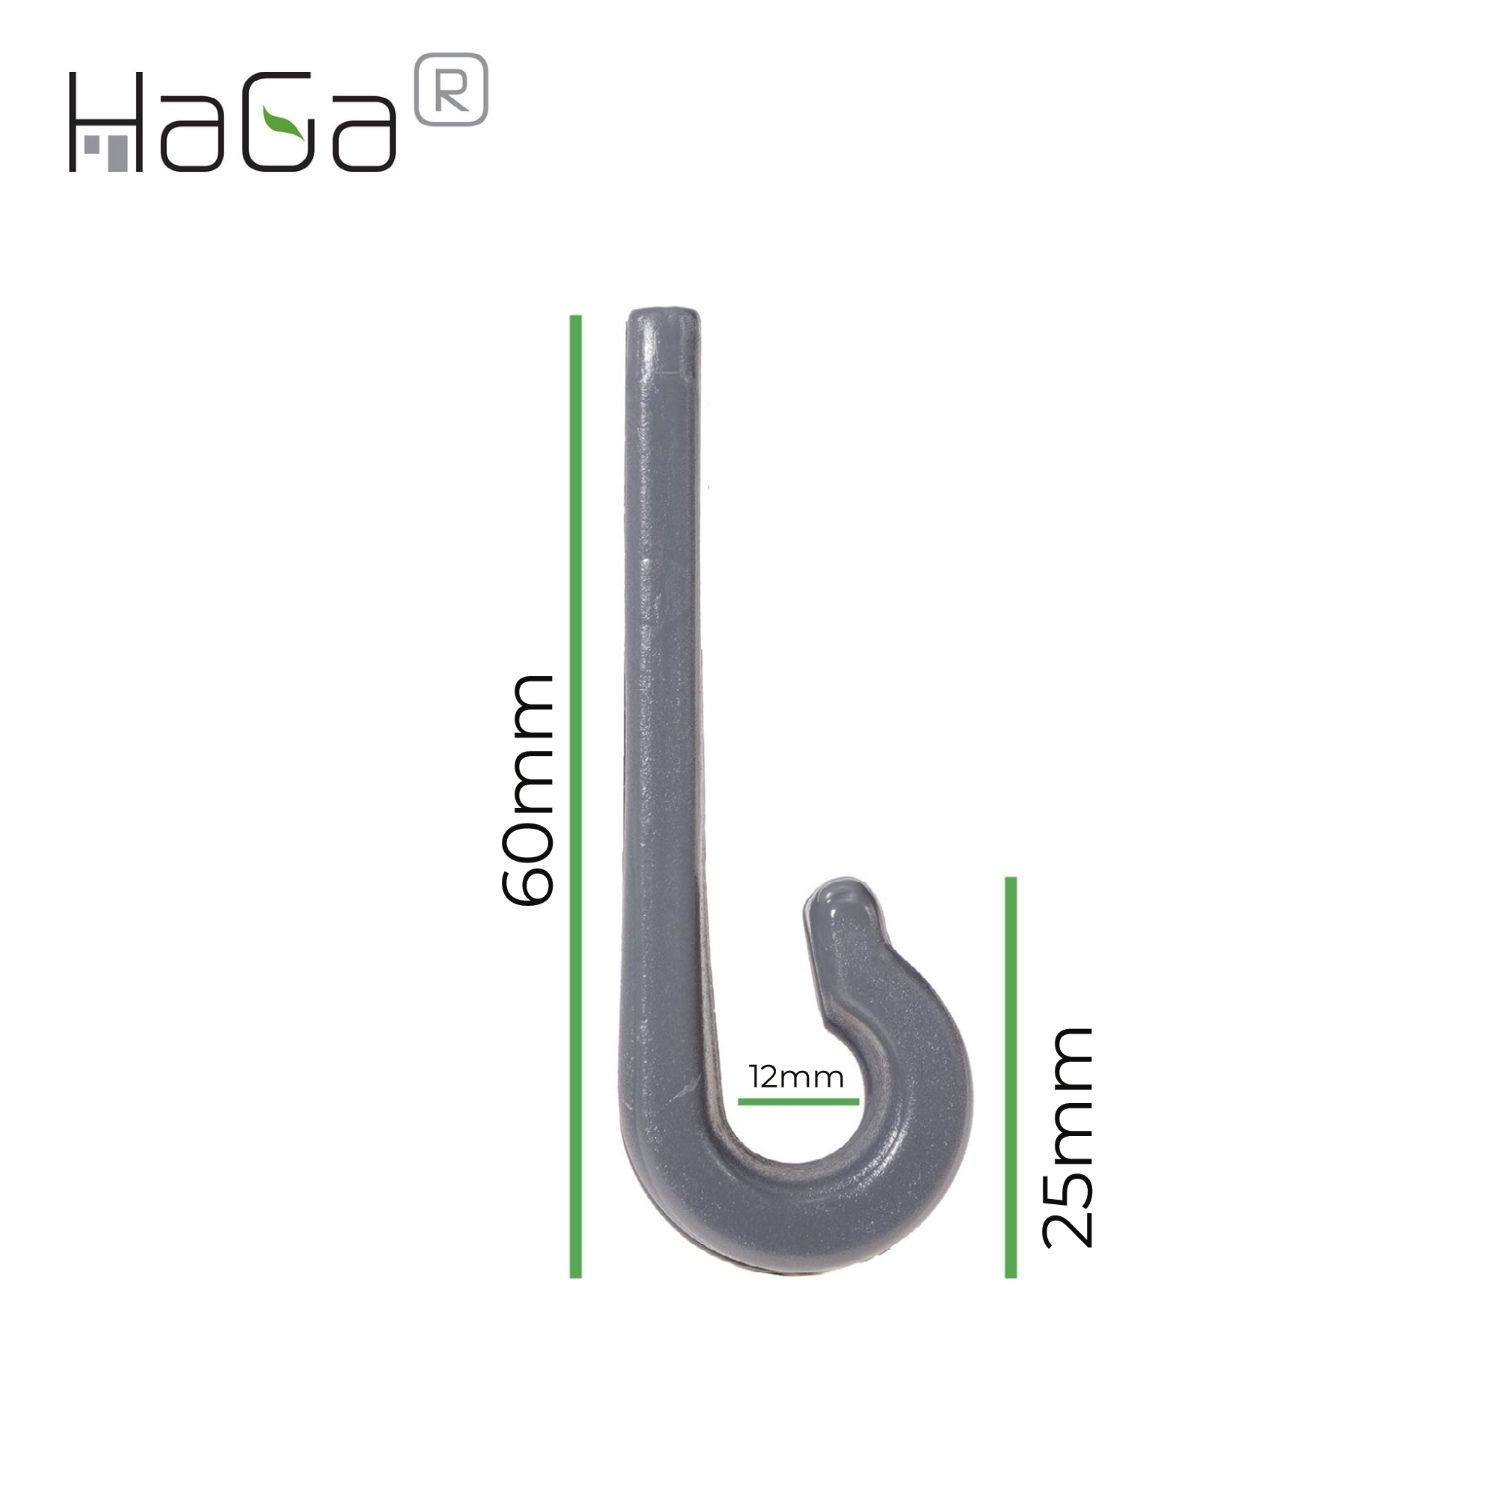 Planenhaken Zweilochhaken für Schleuderverschluss HaGa® 60mm x 18mm 50 Stück